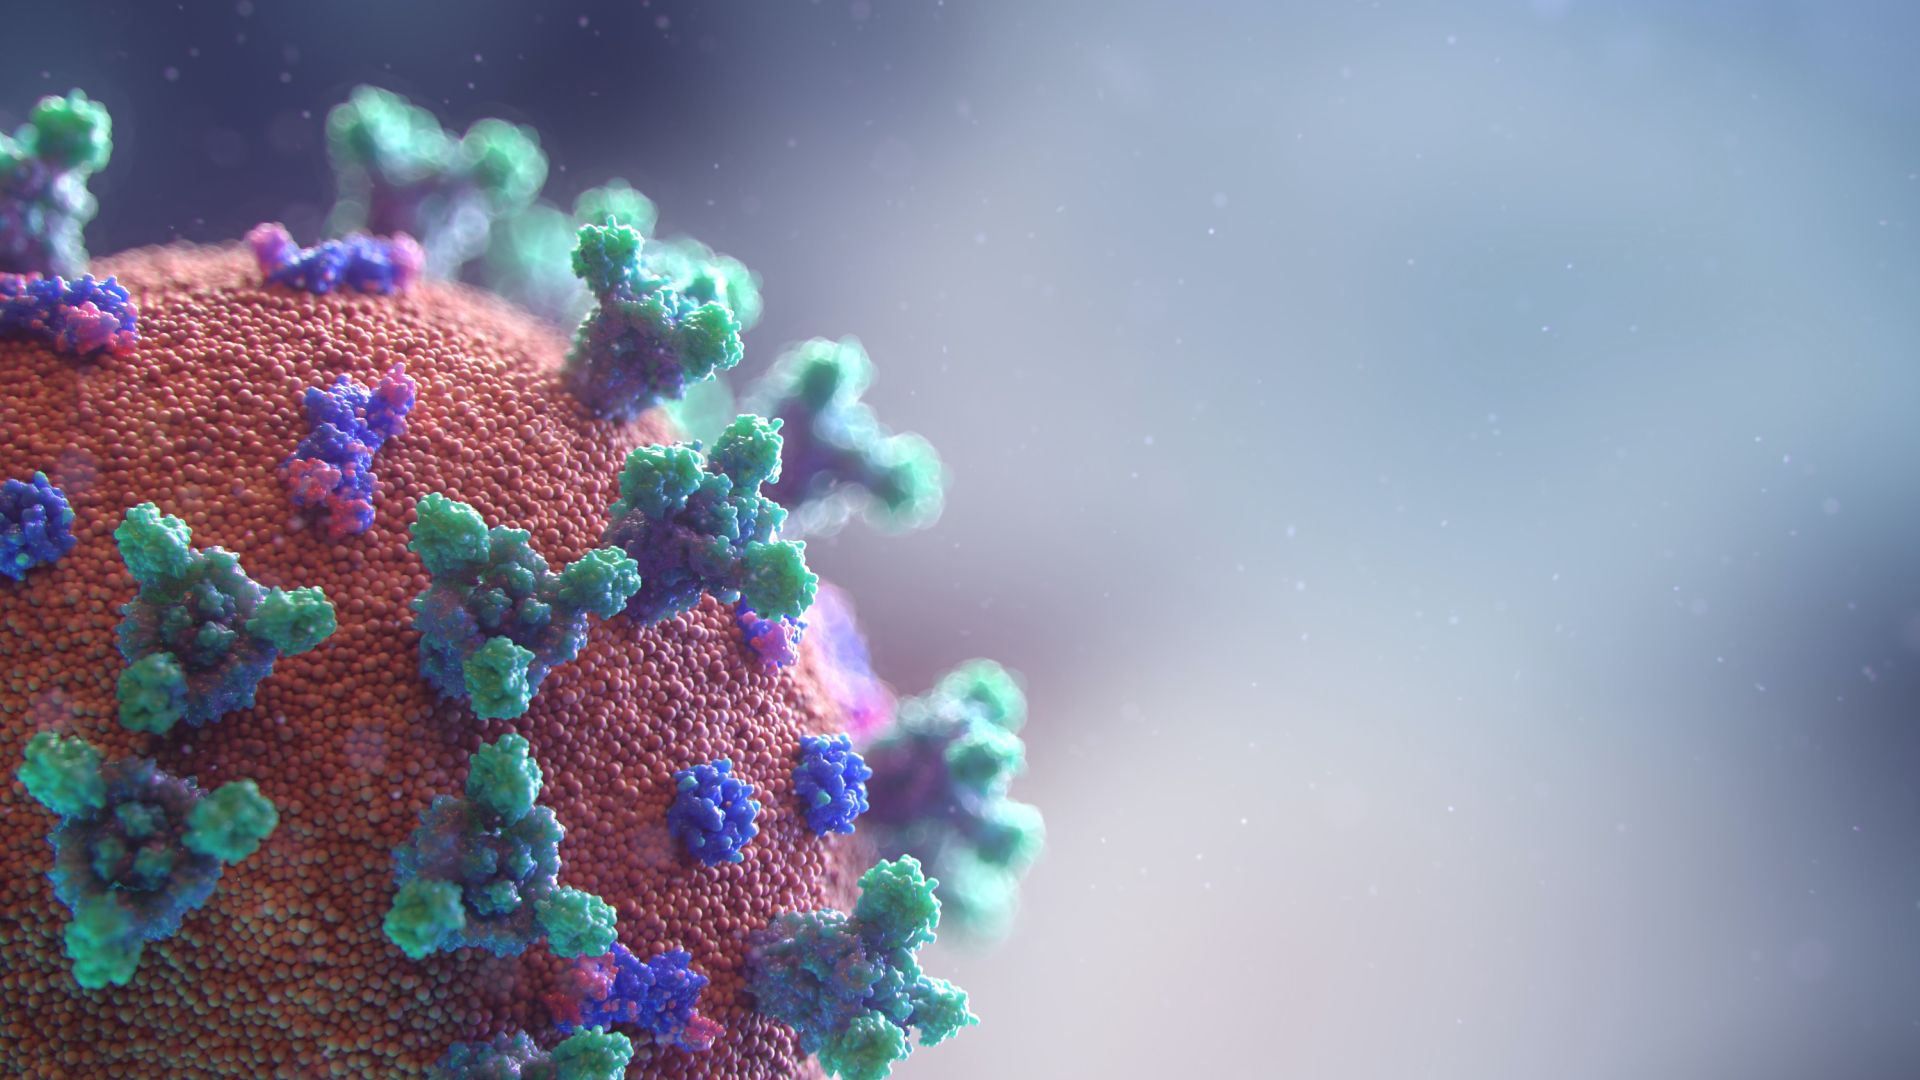 SUA: Un nou test de diagnostic detectează în 15 minute infecția cu coronavirus